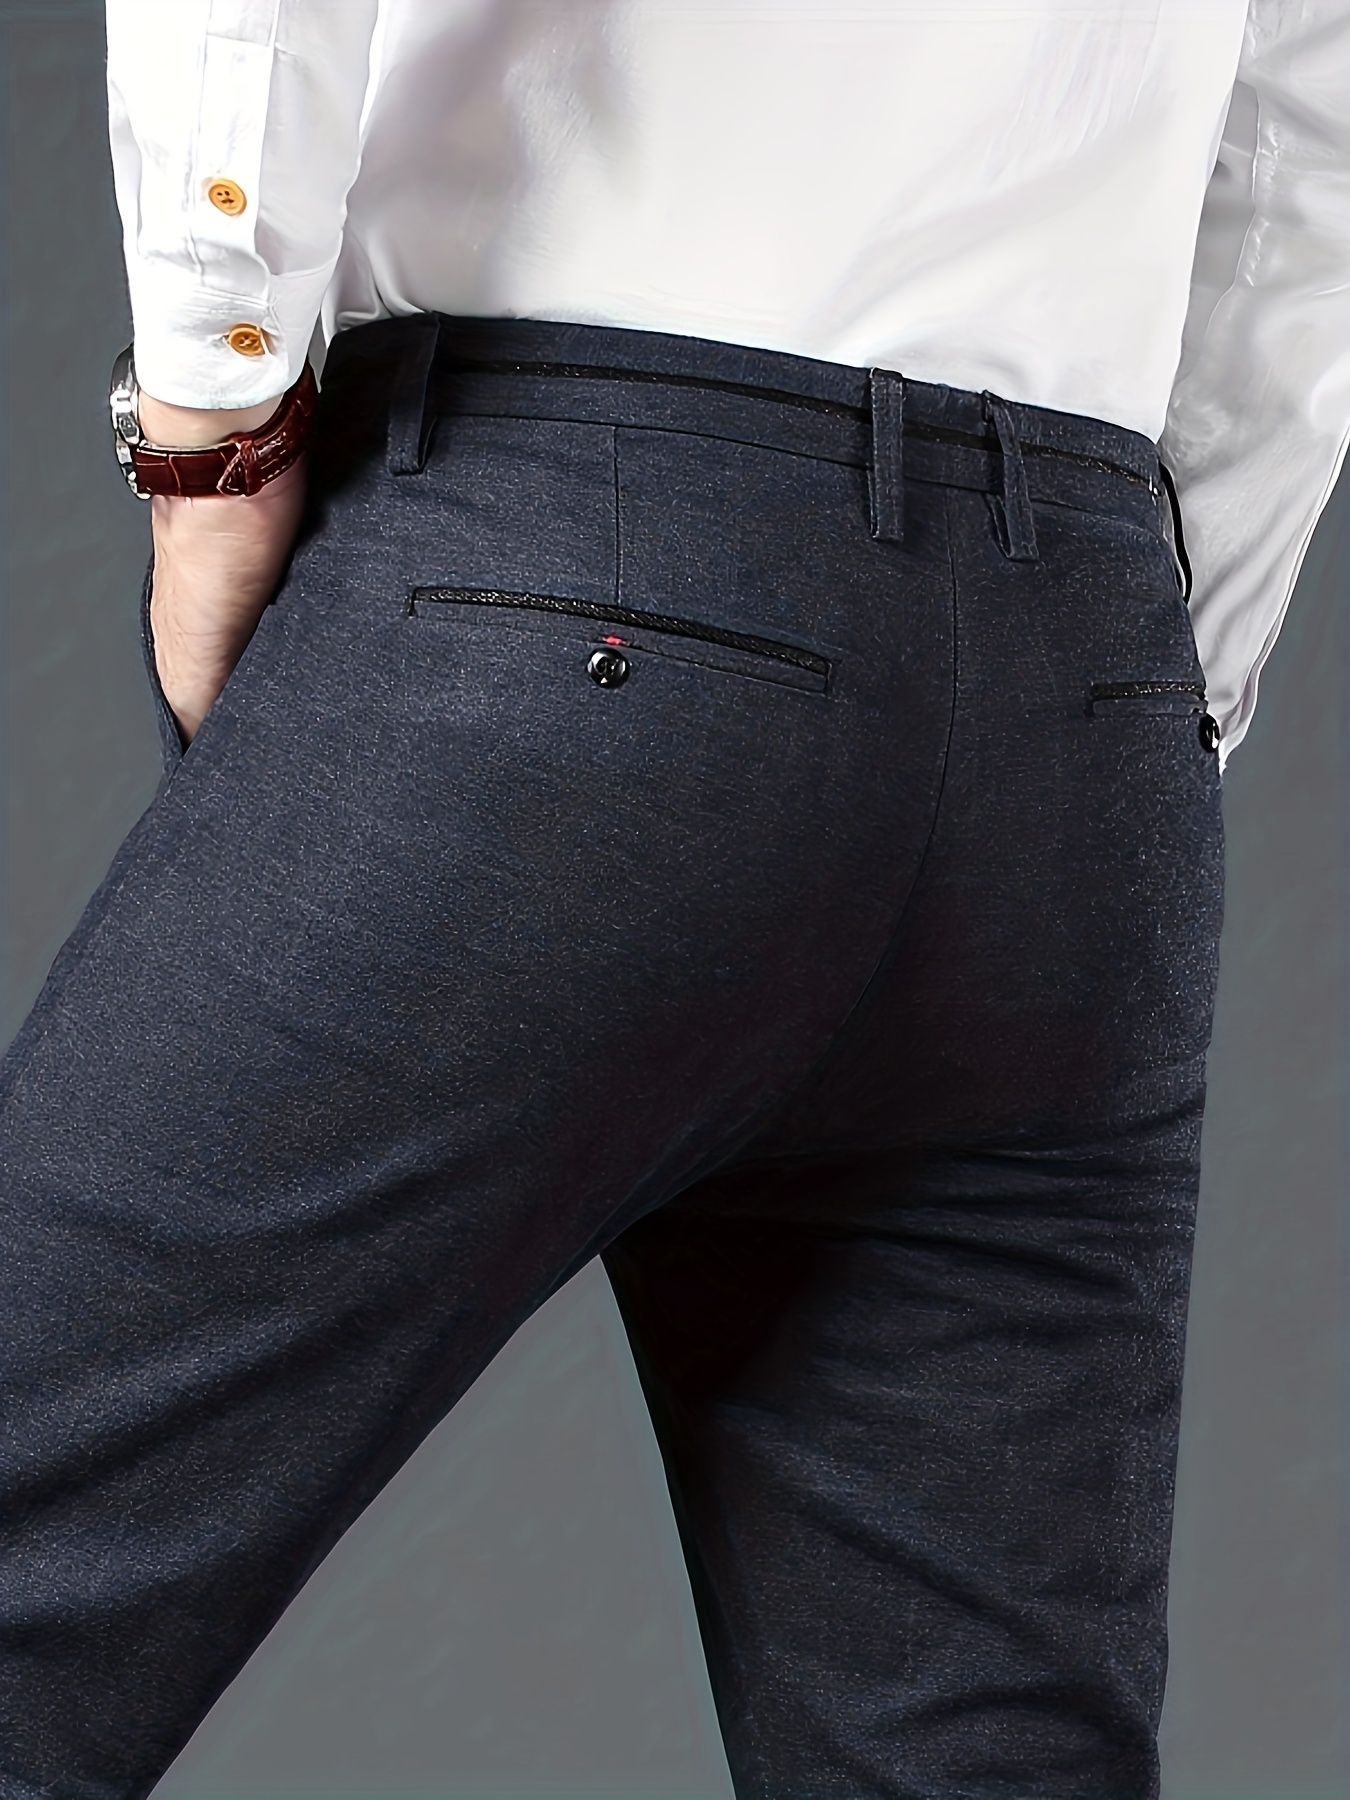 Slim Fit Plaid Slacks, Men's Casual Vintage Style Slightly Stretch Dress  Pants For Spring Summer